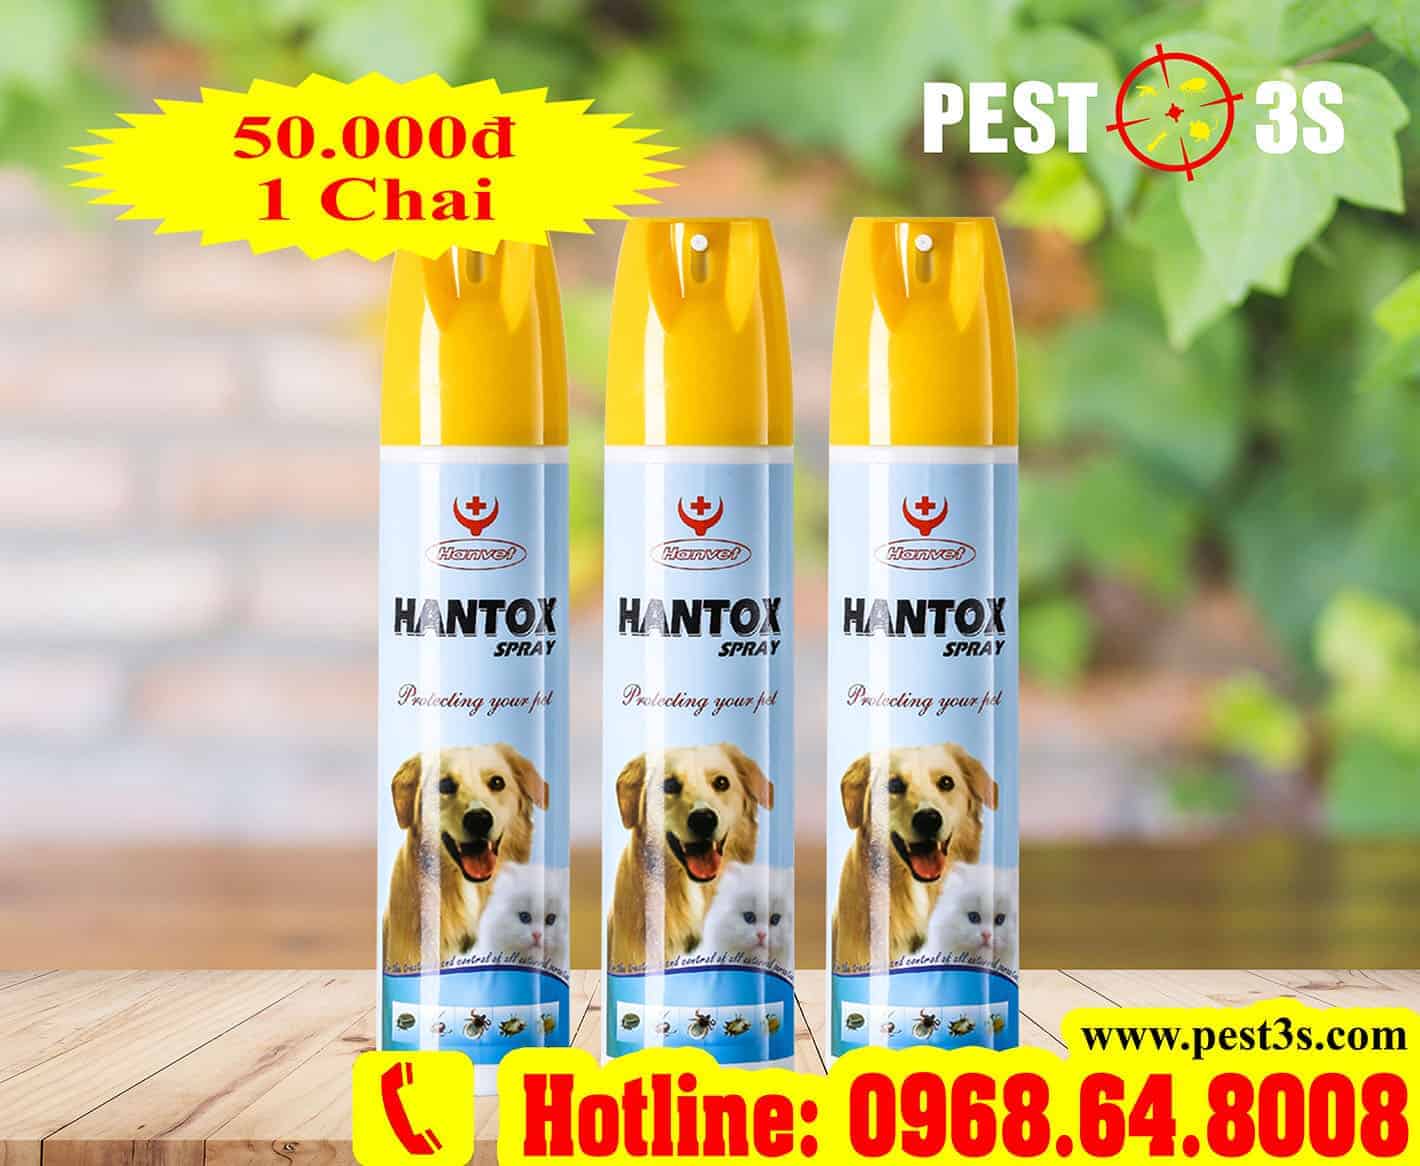 Hantox Spray (300ml) - Bình xịt phun sương phòng và diệt hiệu quả bọ chét, bét, ve, chấy, rận ở chó, mèo, thú cảnh...